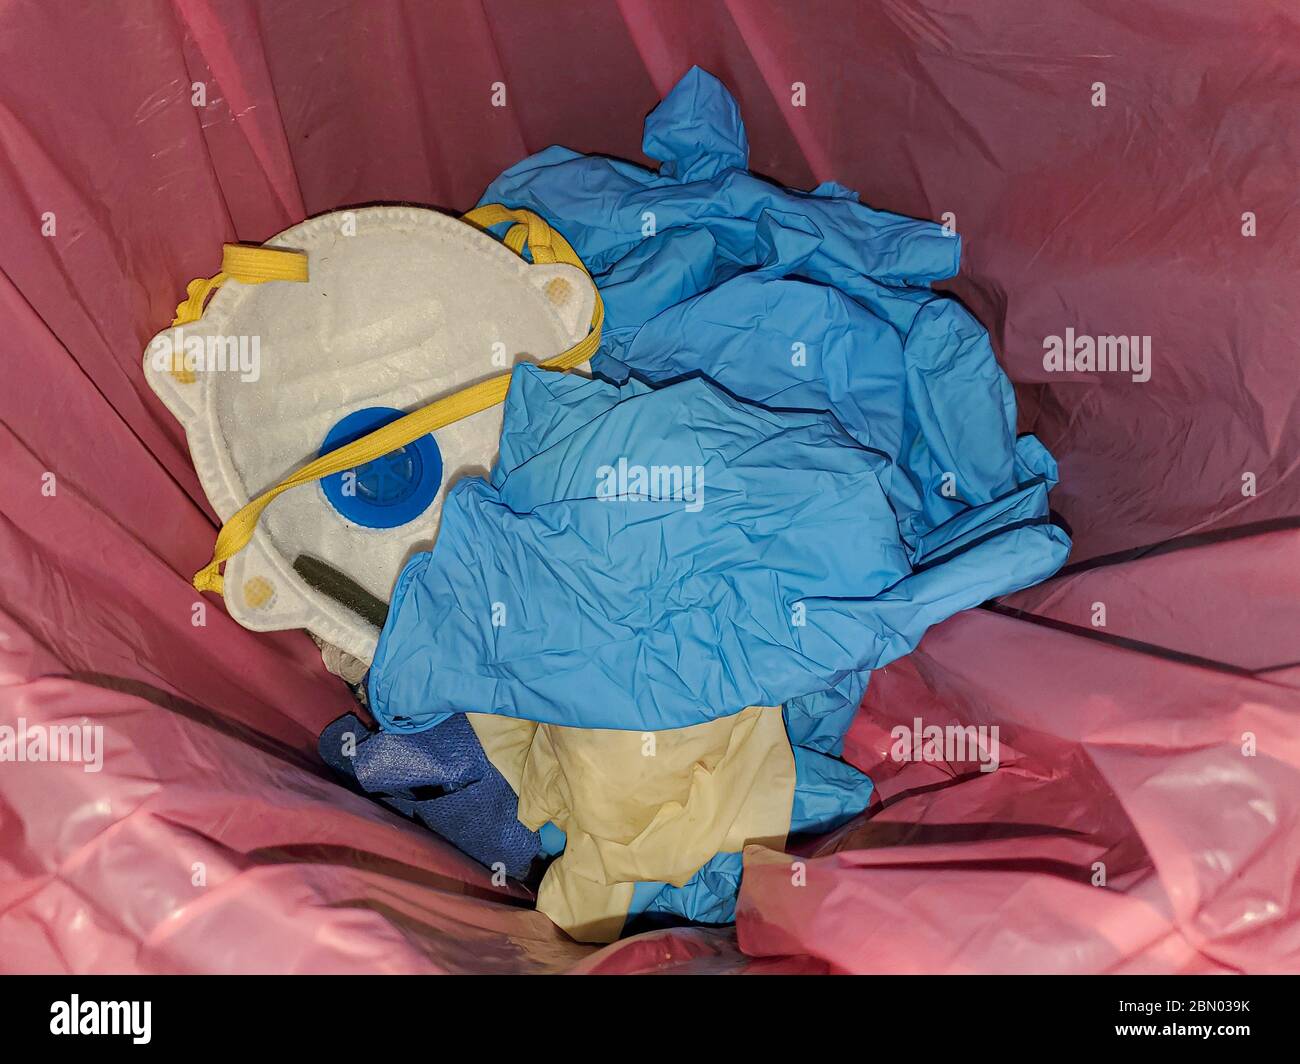 Maschera protettiva e guanti sporchi per uso medico nel cestino dei rifiuti, articoli per l'apparecchiatura per la malattia di coronavirus Foto Stock